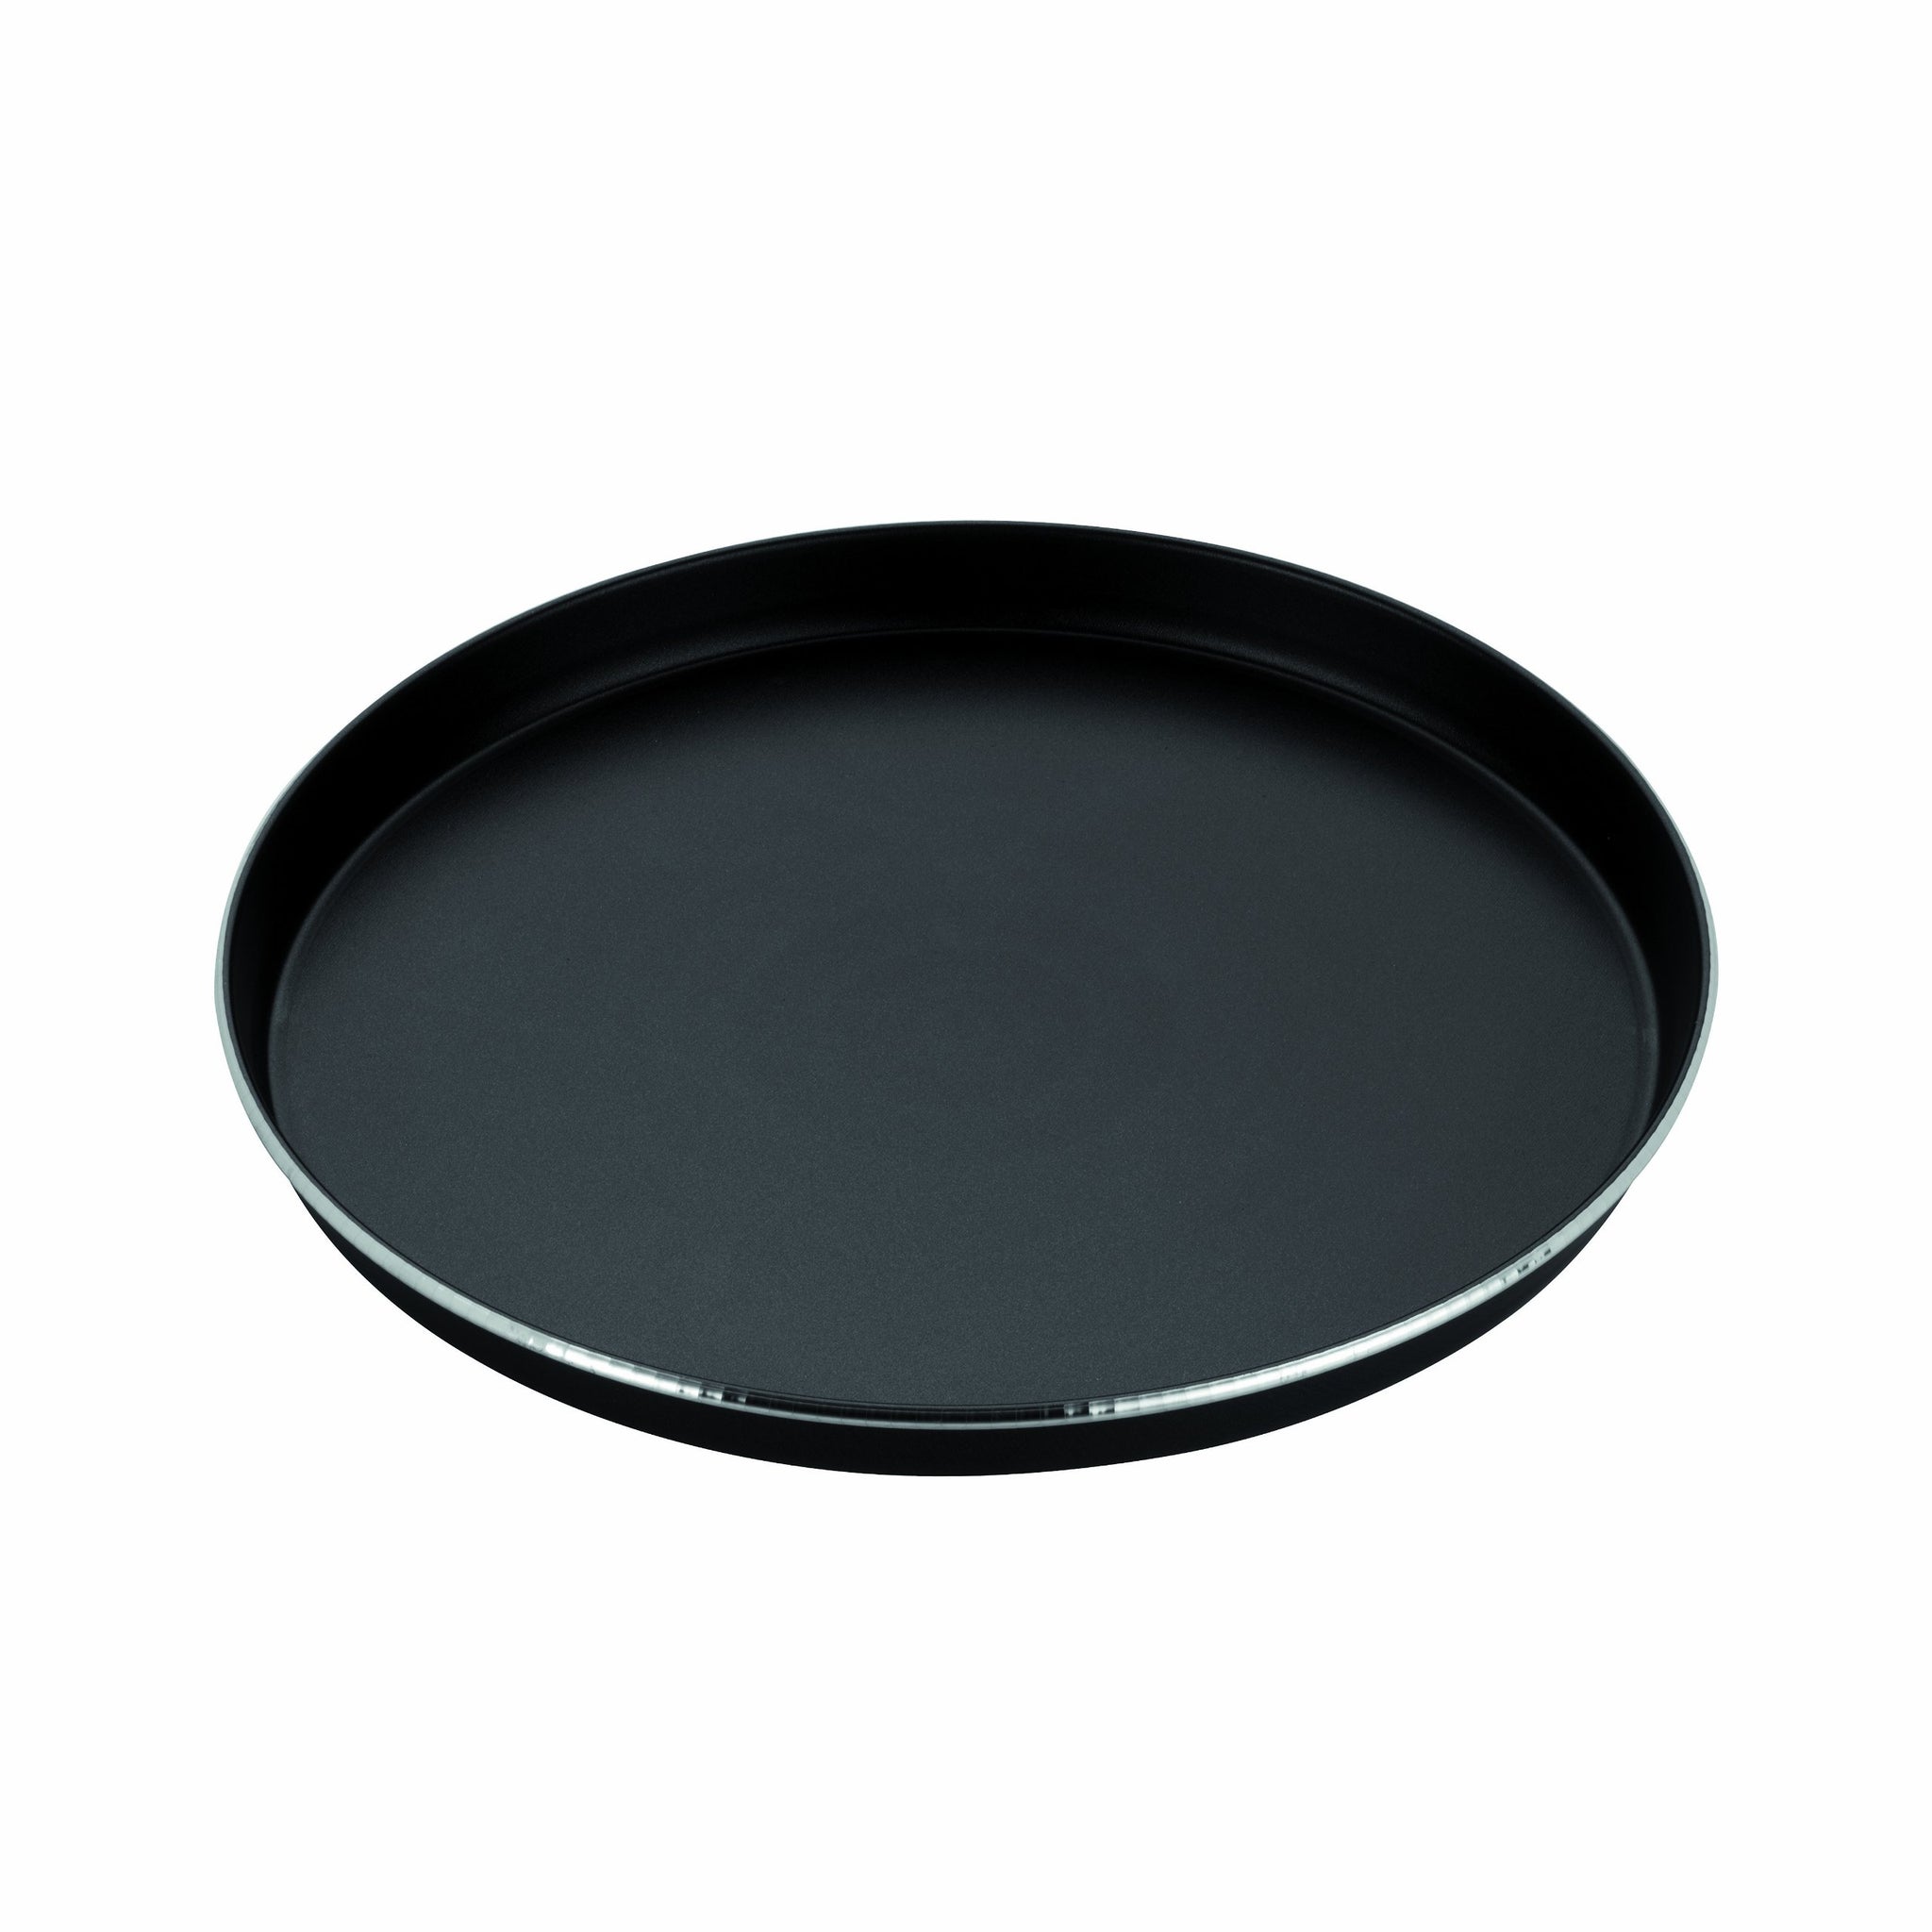 Whirlpool AVM305 Piatto Crisp grande per forno a microonde Black, Brow –